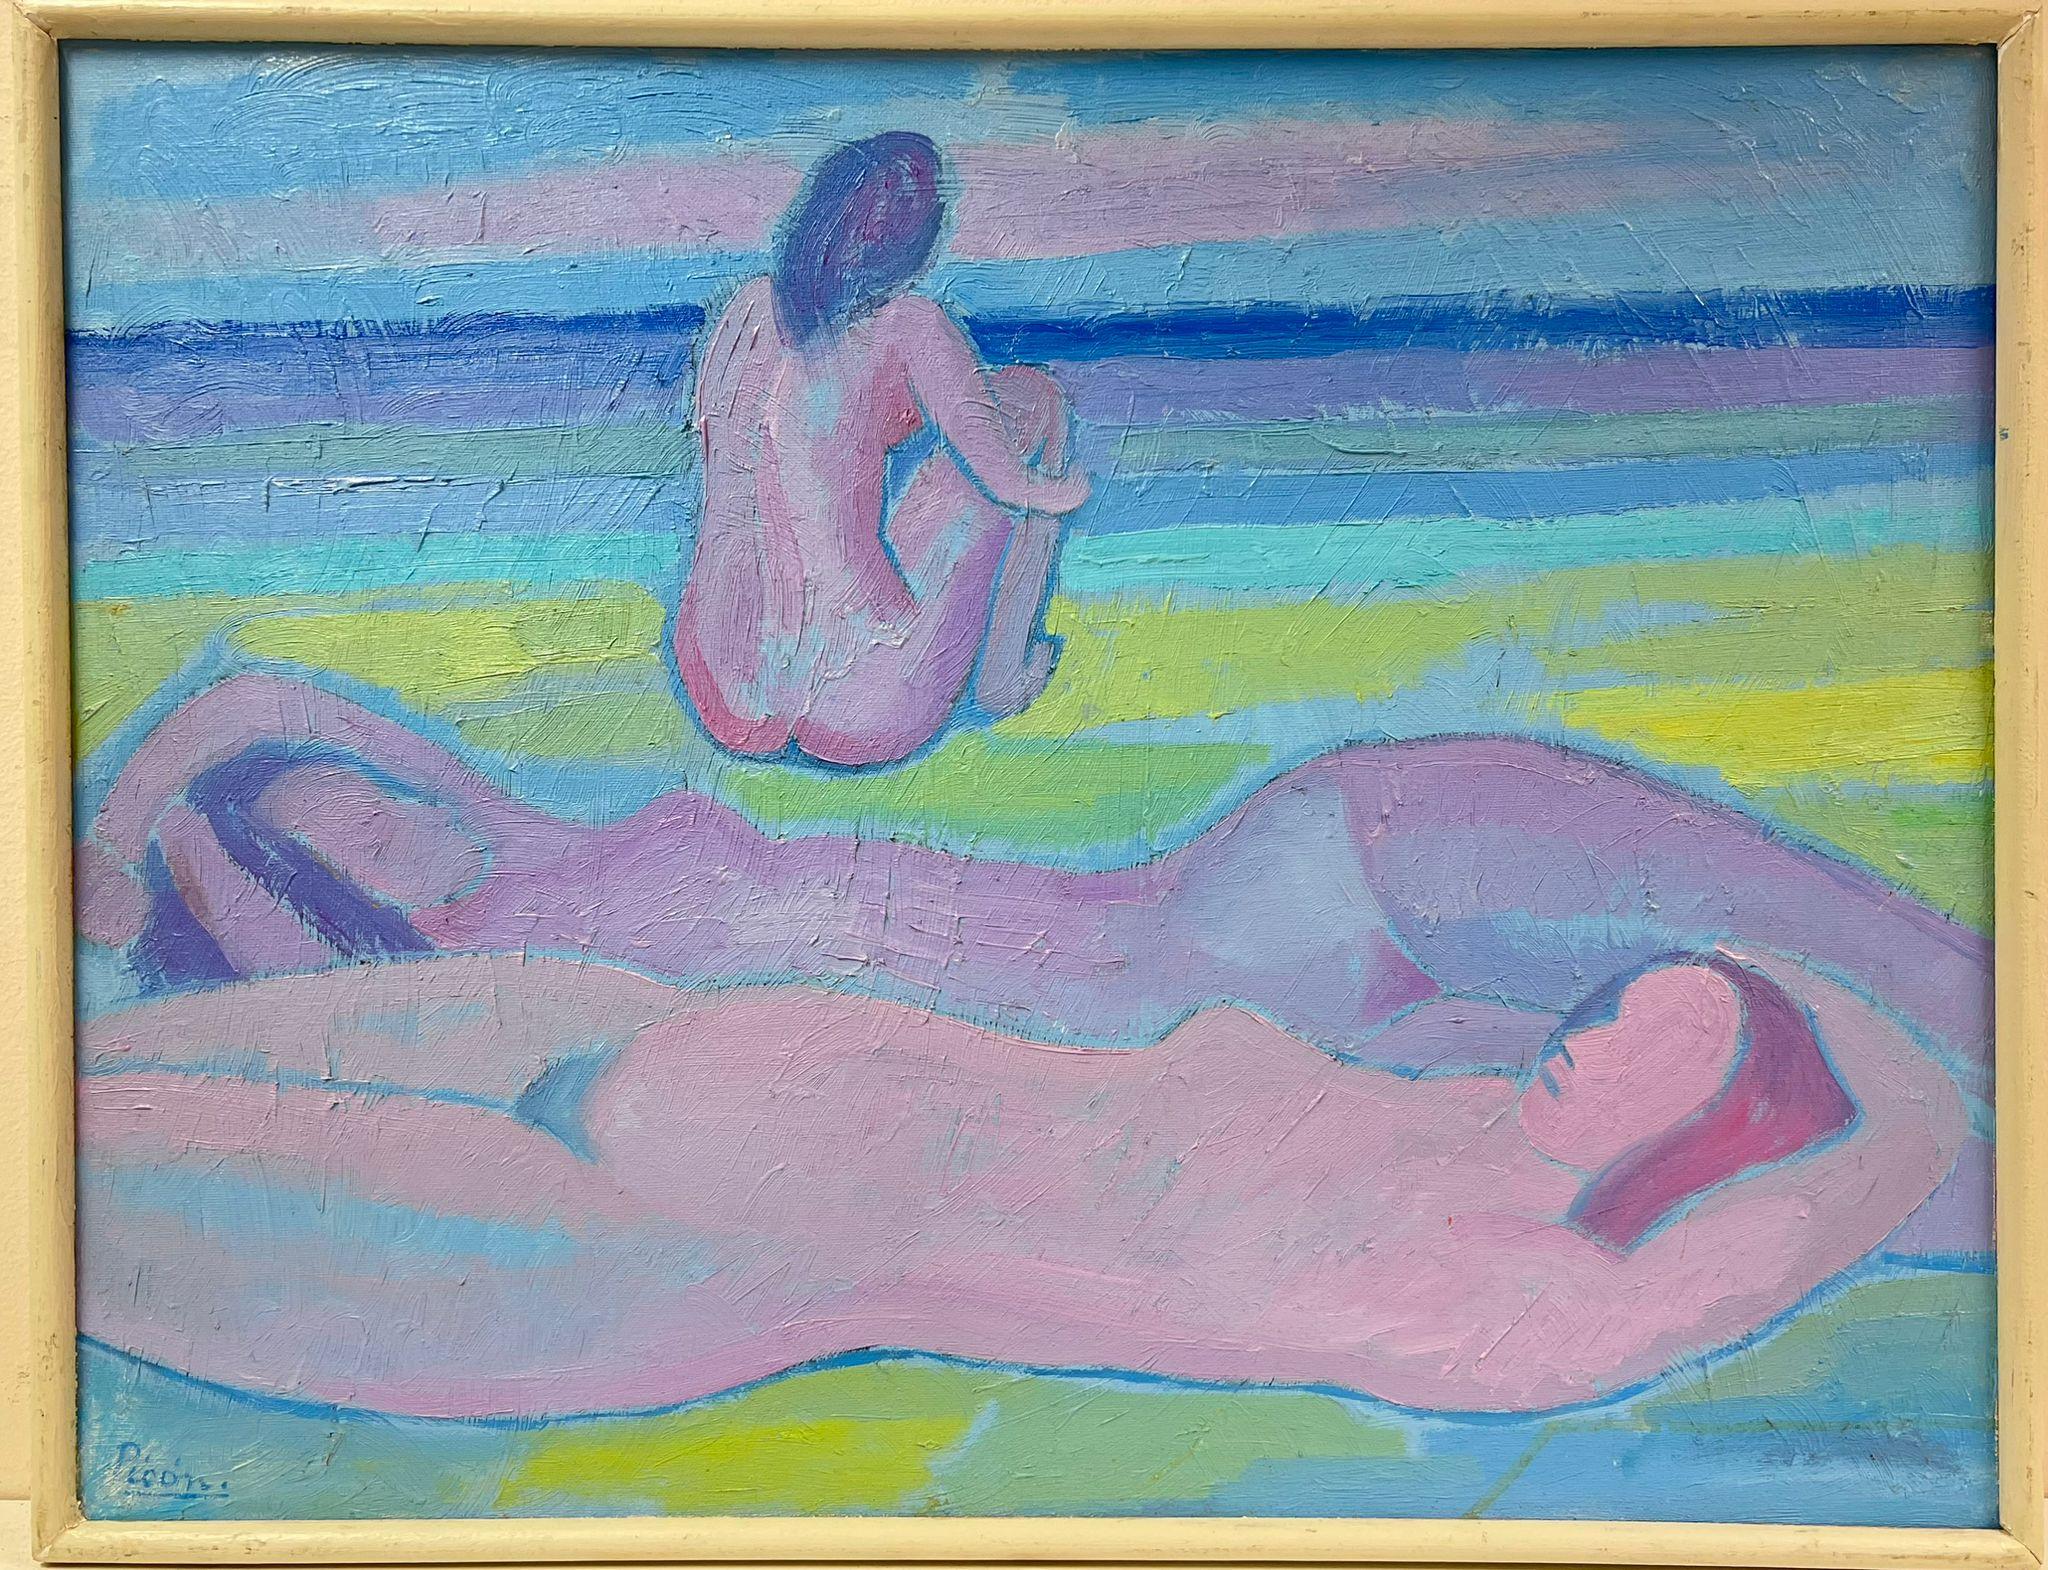 Signiertes französisches modernistisches Ölgemälde einer nackten Frau am Strand, 20. Jahrhundert – Painting von French Modernist